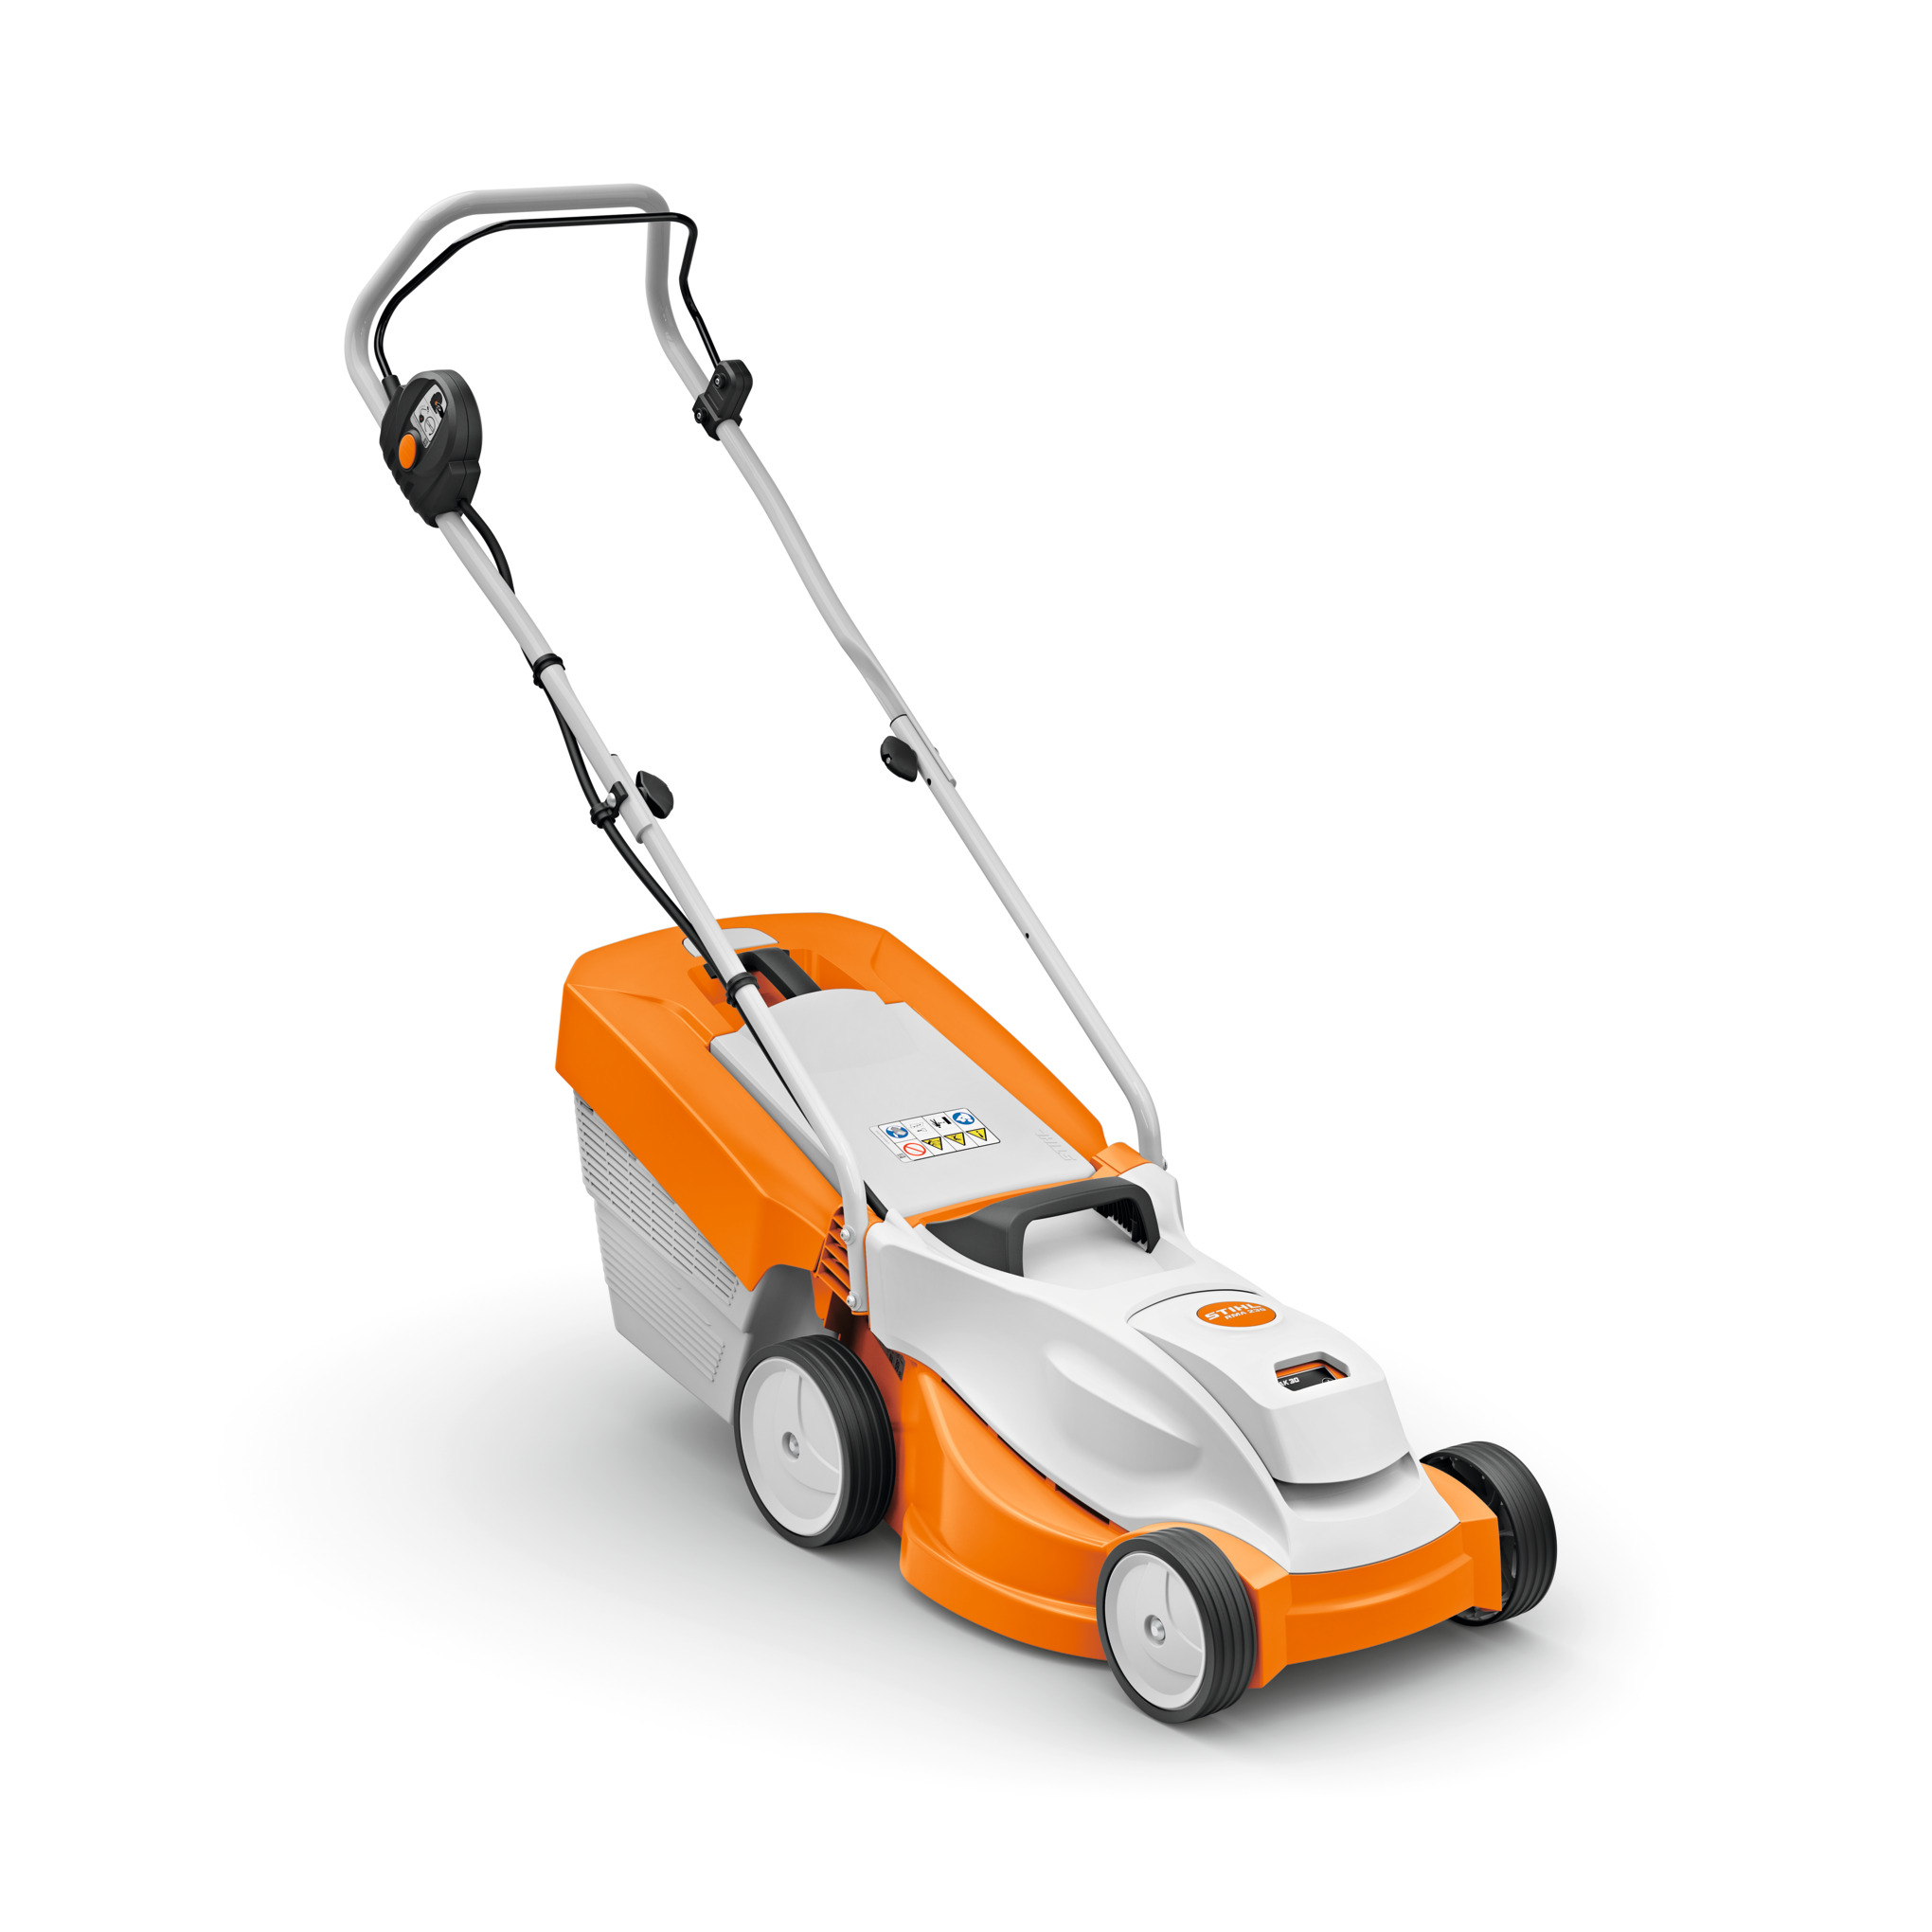 RMA 235 Cordless Lawn Mower – AK System